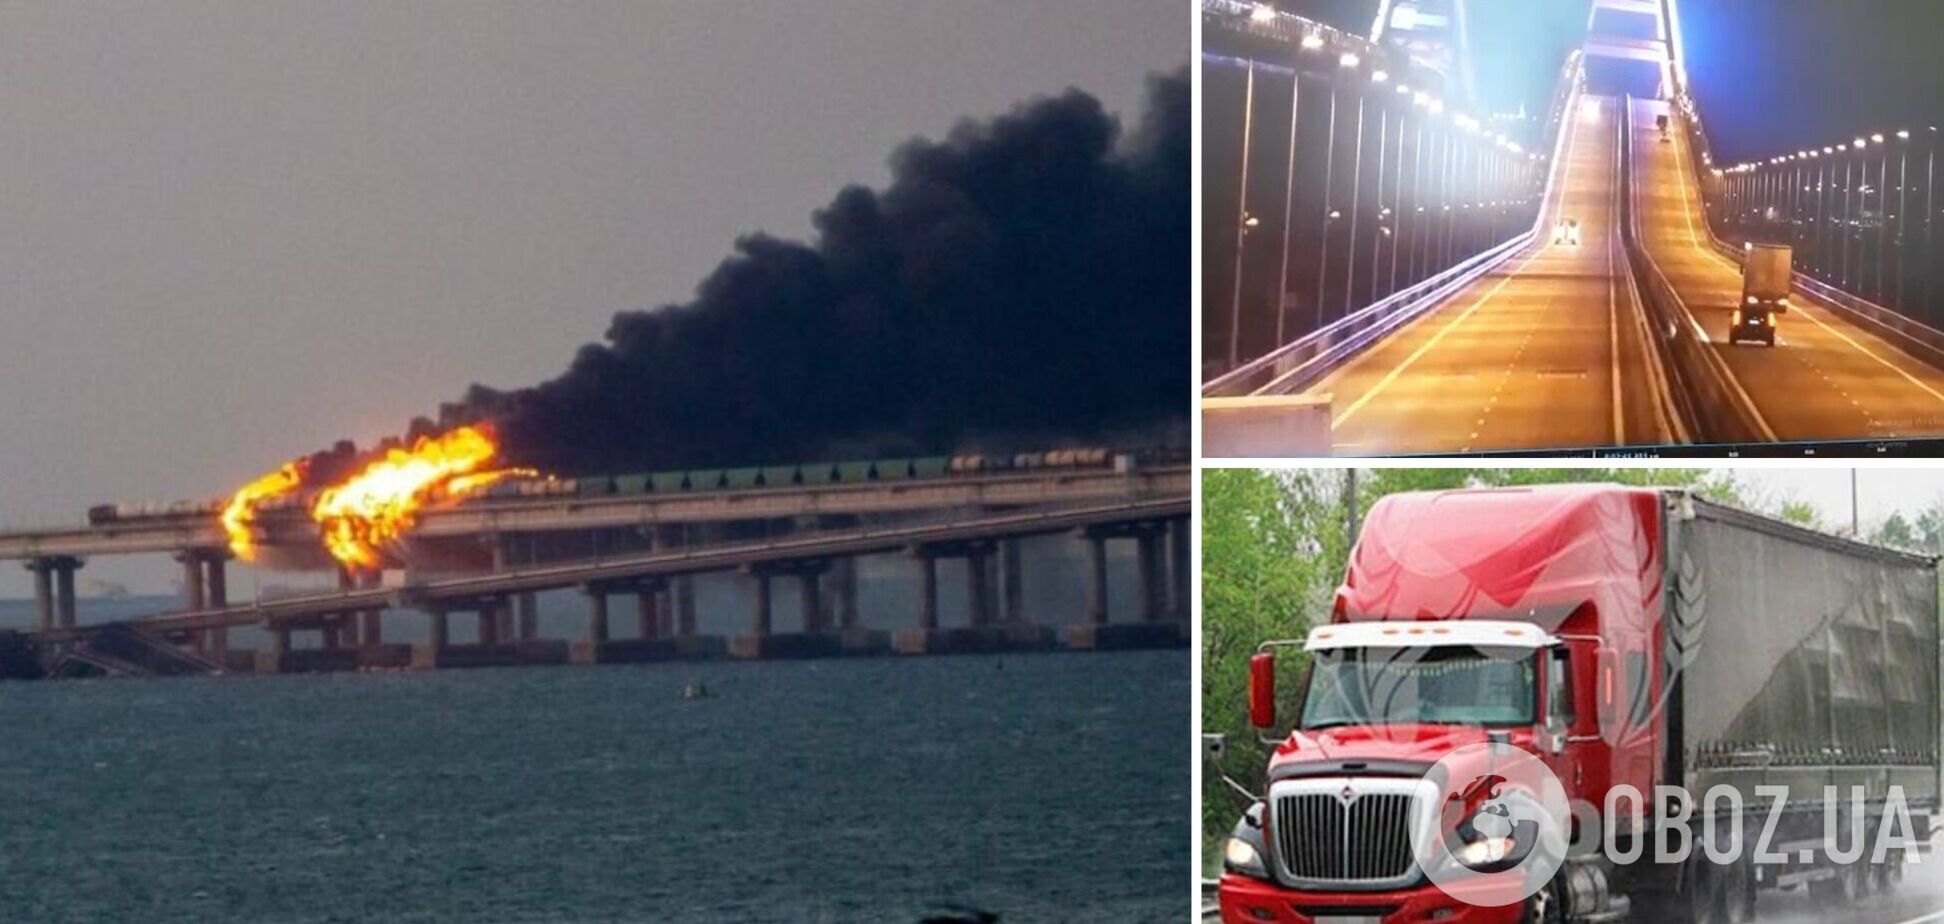 В России назвали имя водителя фуры, взорвавшейся на Крымском мосту: владелец авто записал видеообращение